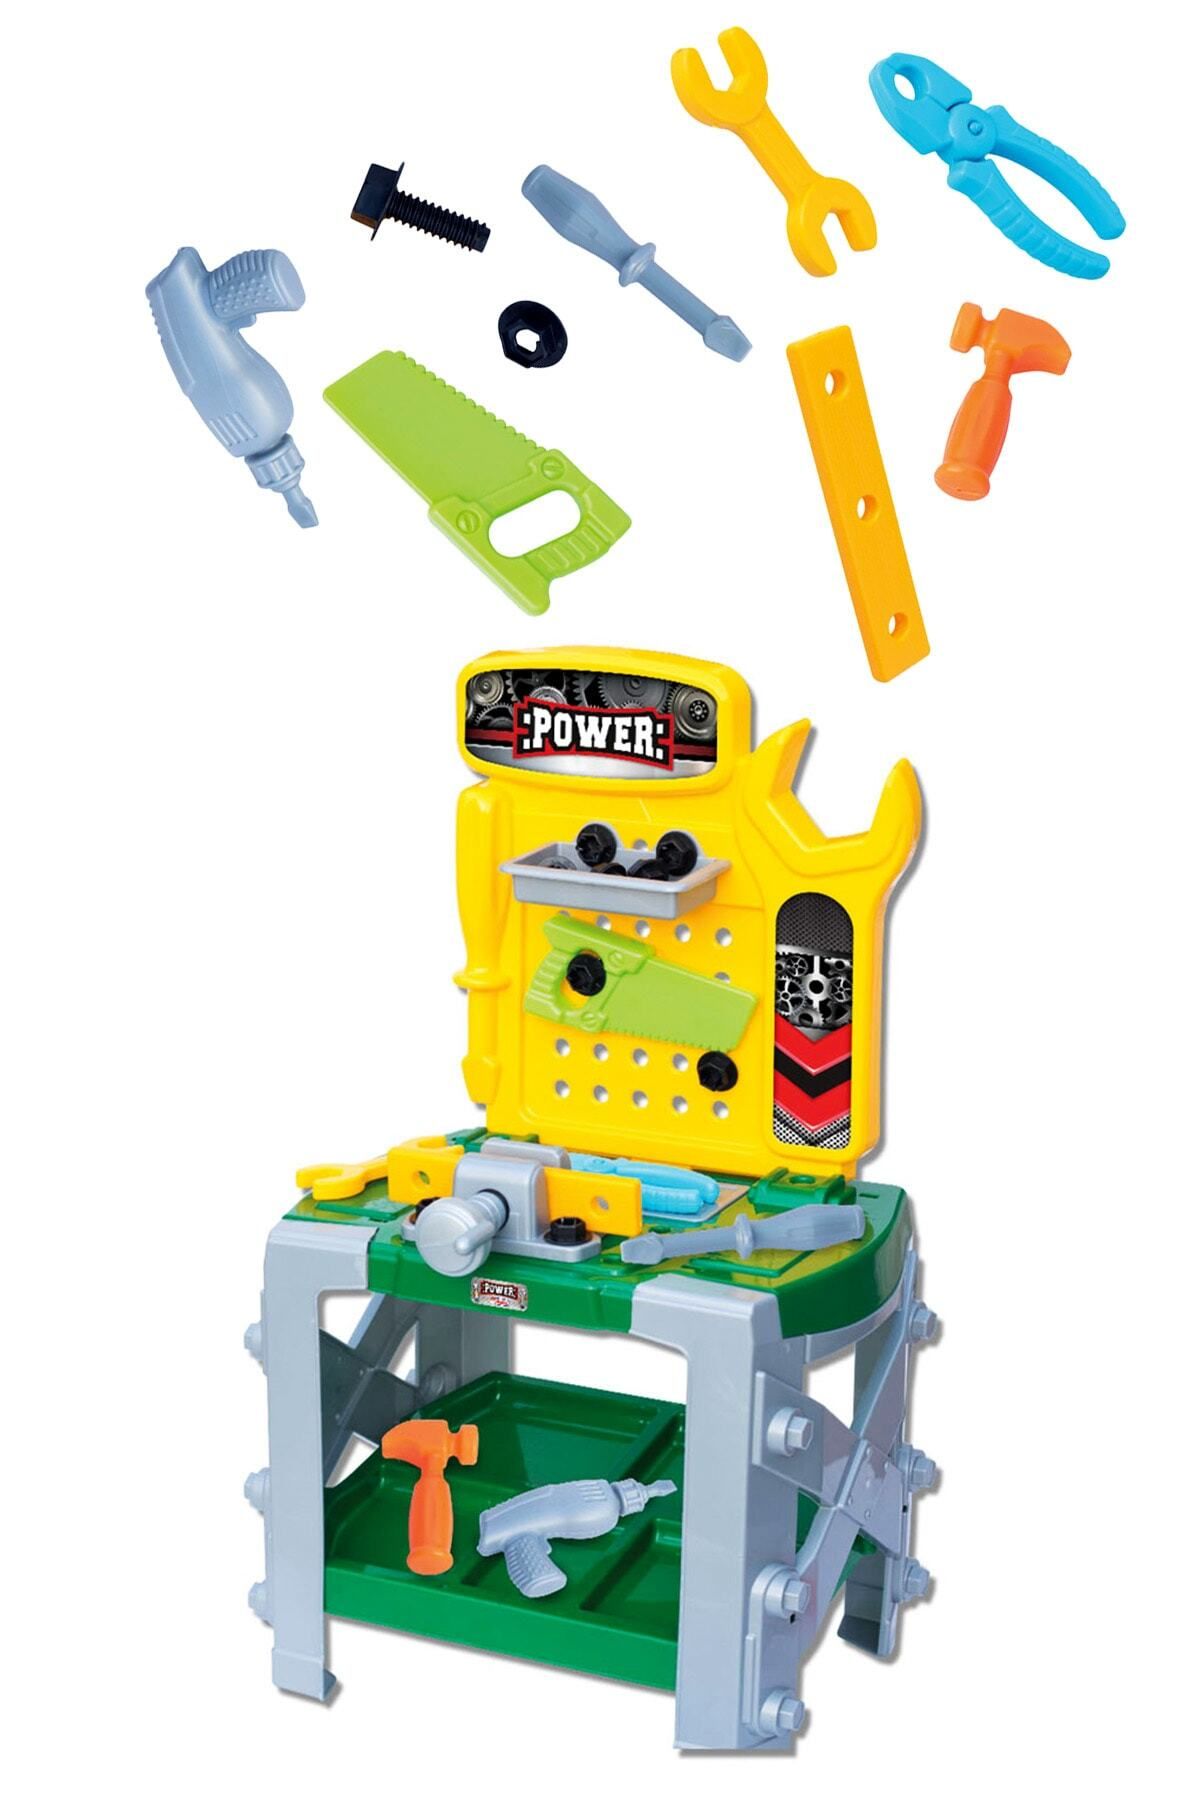 ToXA Power Tamir Seti 33 Parça Tool Bench Eğitici Oyuncak Set Tezgahlı Çocuk Tamirat Oyun Seti 03033